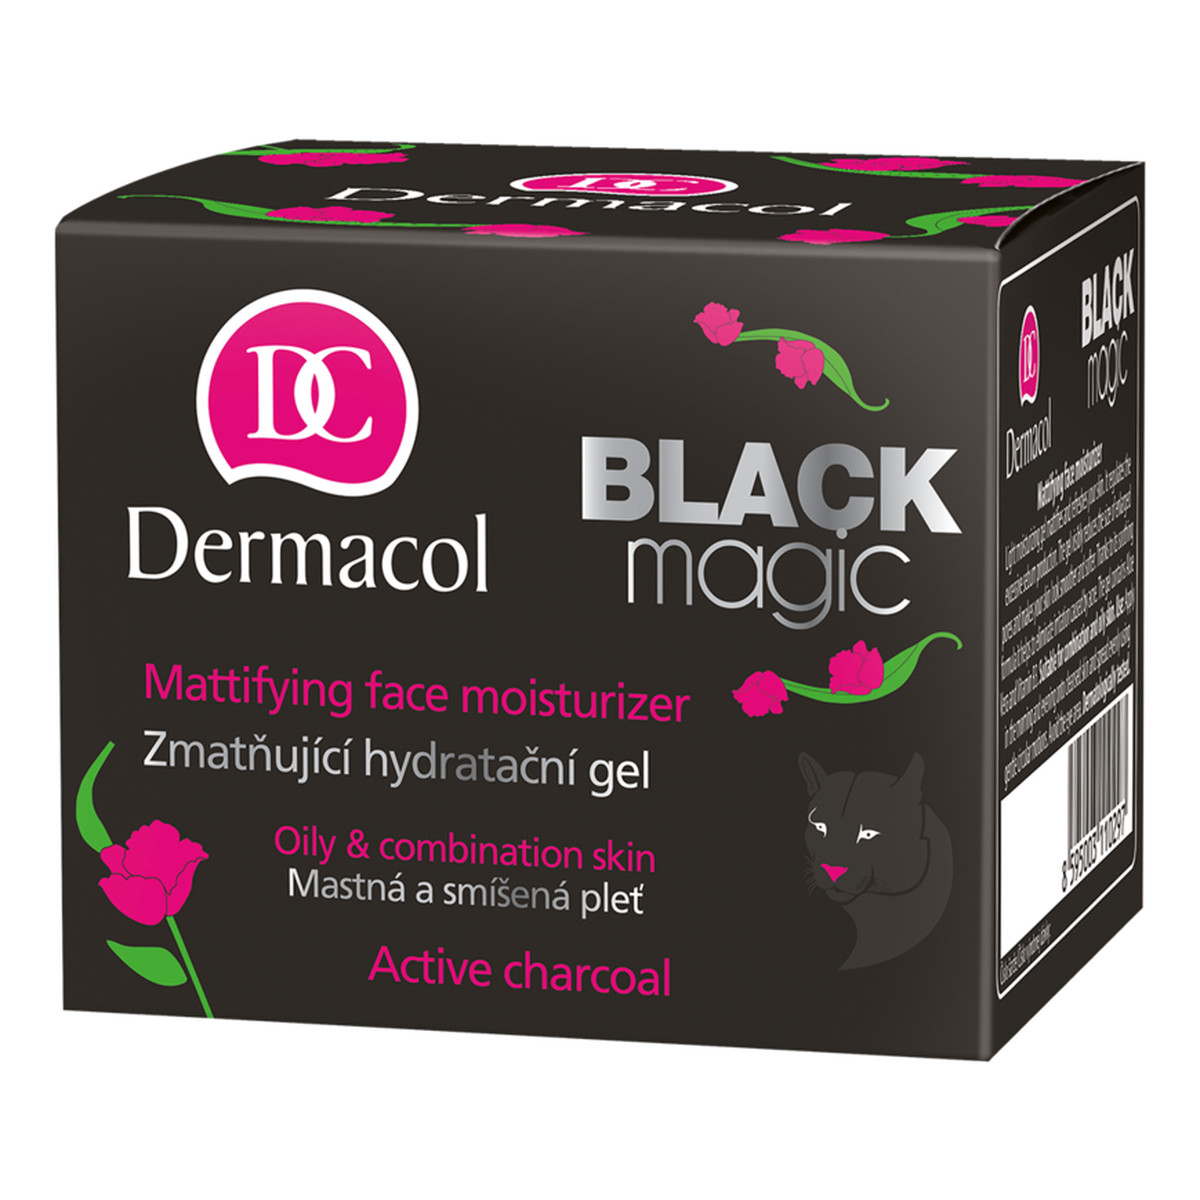 Dermacol Black magic nawilżająco-matujący żel do twarzy 50ml